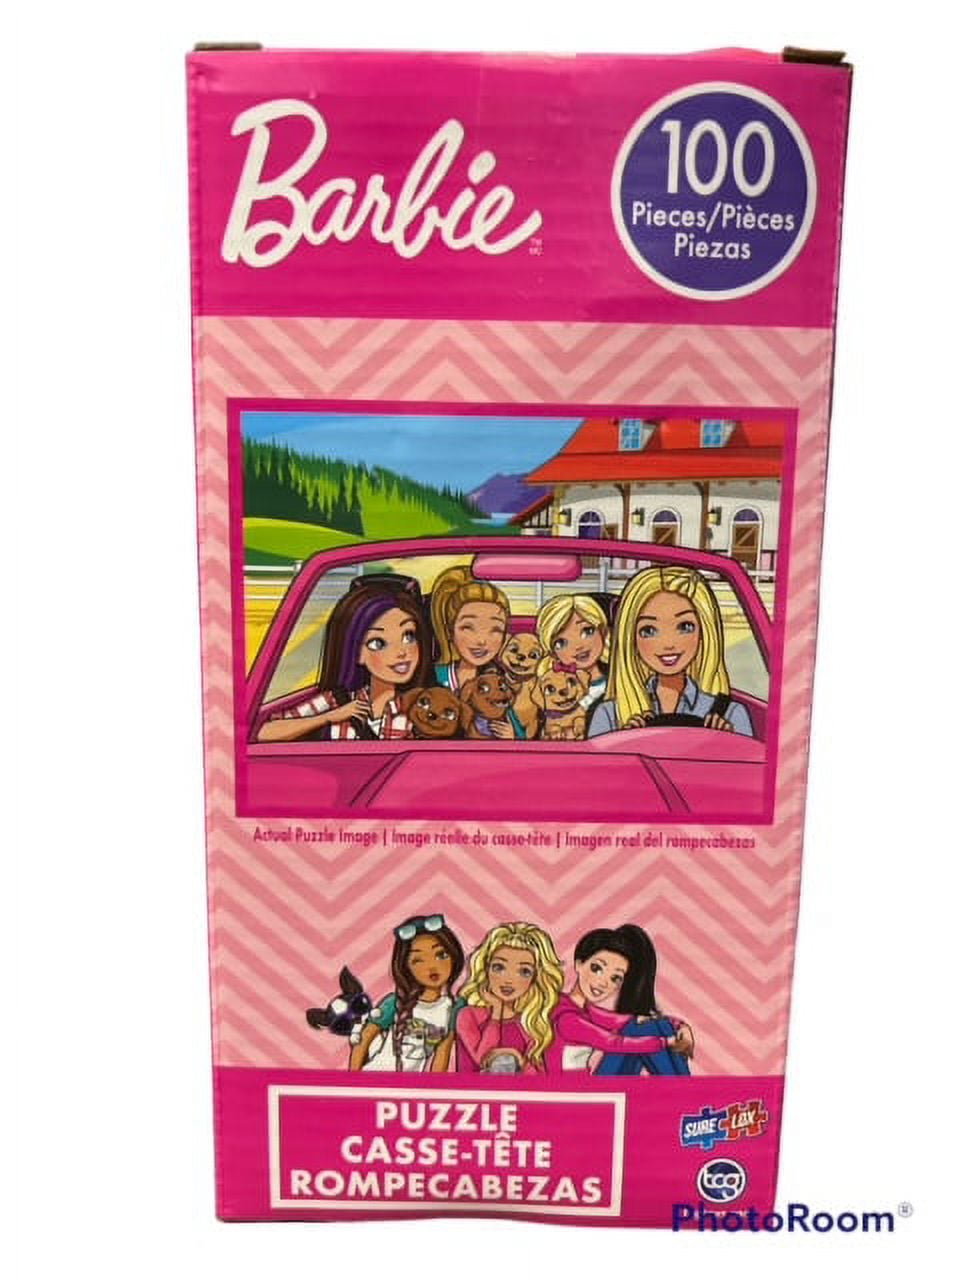 TCG Toys Barbie Puzzle, 100 pc - Kroger